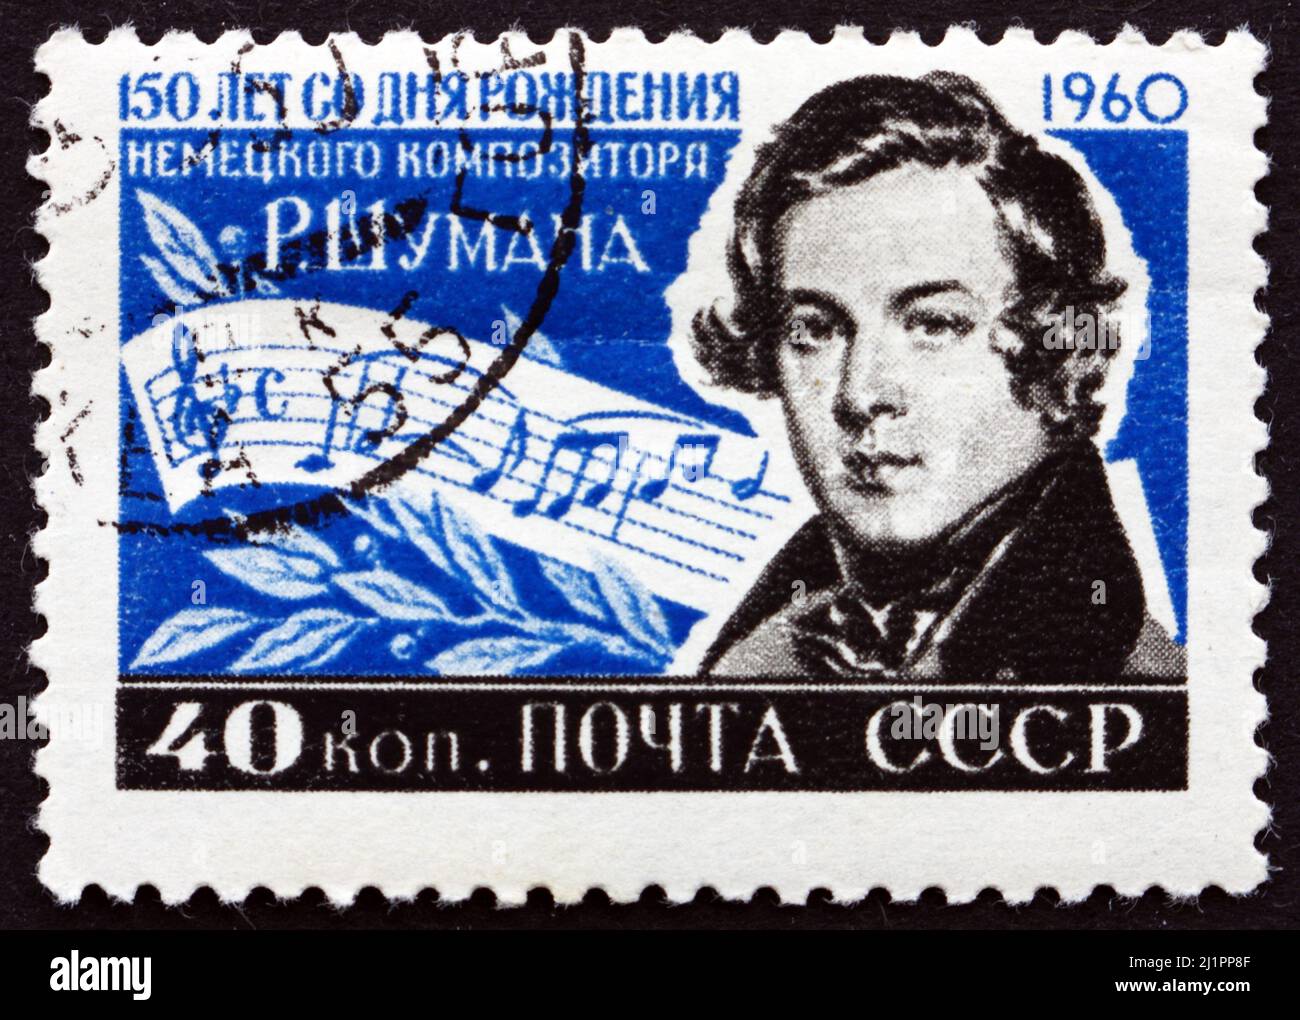 RUSSIE - VERS 1960 : un timbre imprimé en Russie montre Robert Schumann, compositeur allemand et critique influent en musique, vers 1960 Banque D'Images